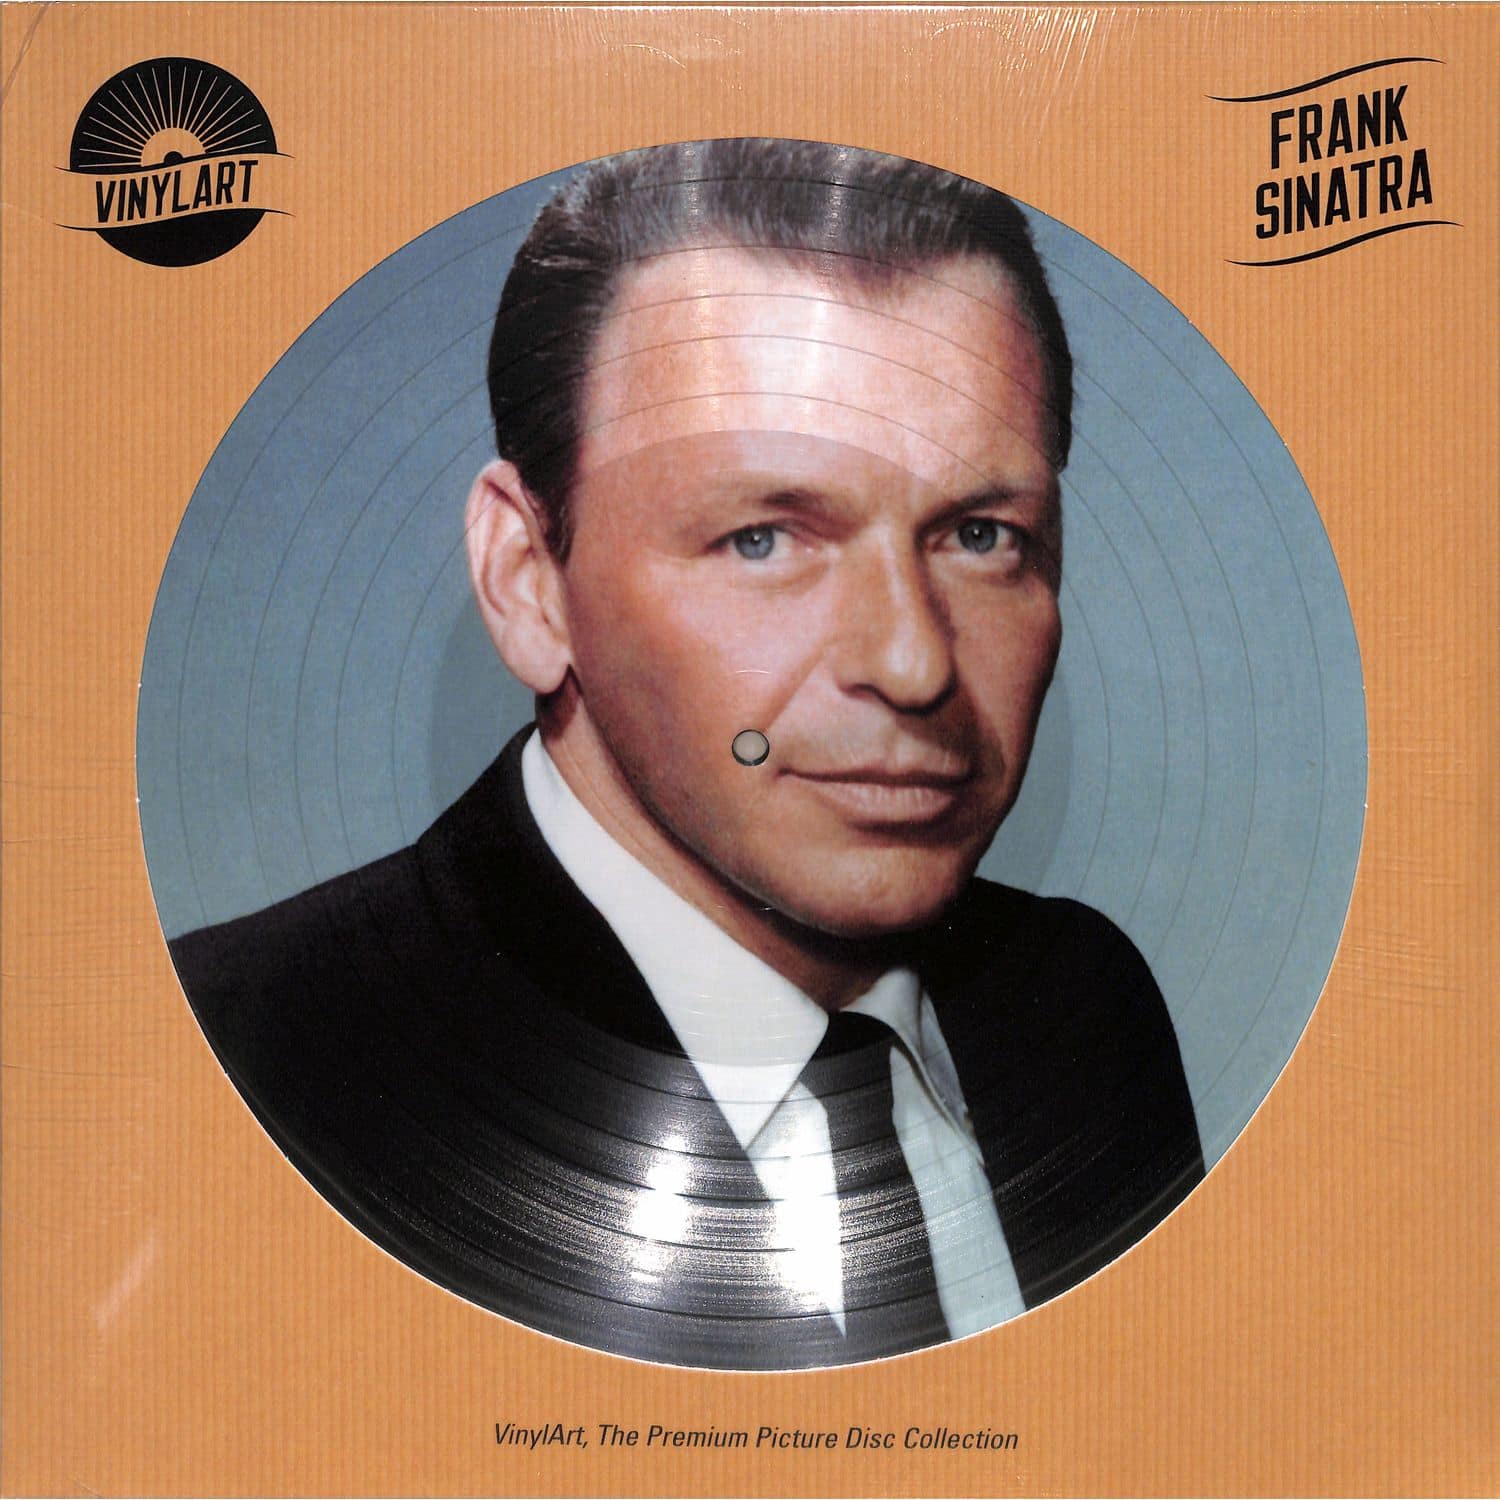 Frank Sinatra - VINYLART - FRANK SINATRA 